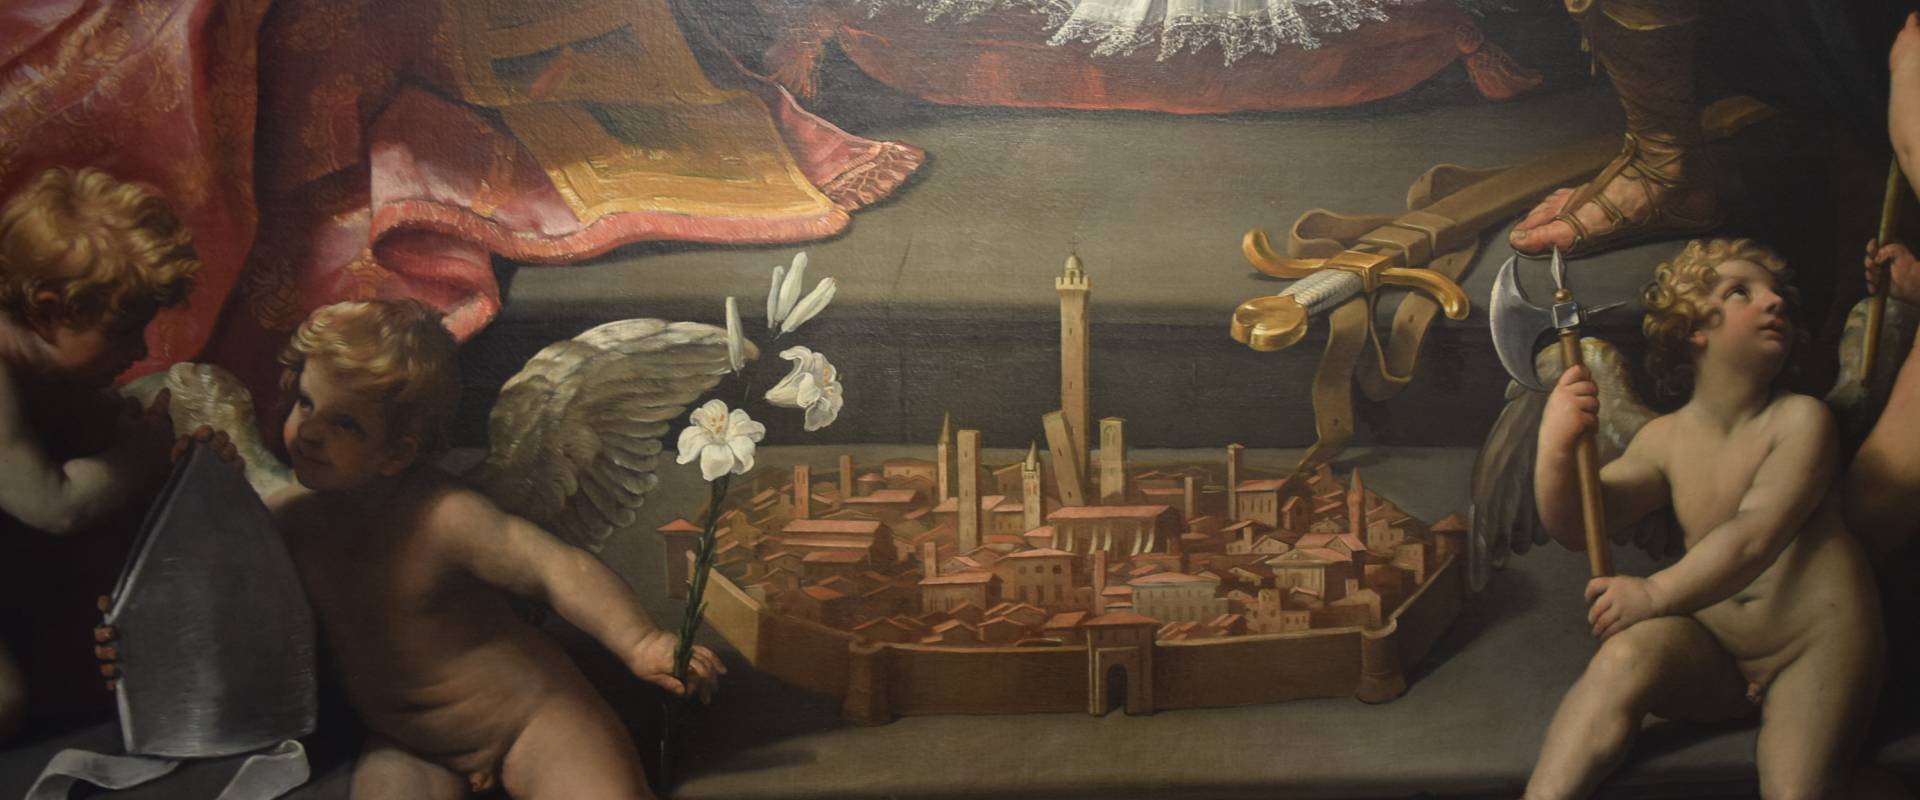 Città di Bologna nel dipinto di Guido Reni "Cristo in Pietà" foto di Ste Bo77